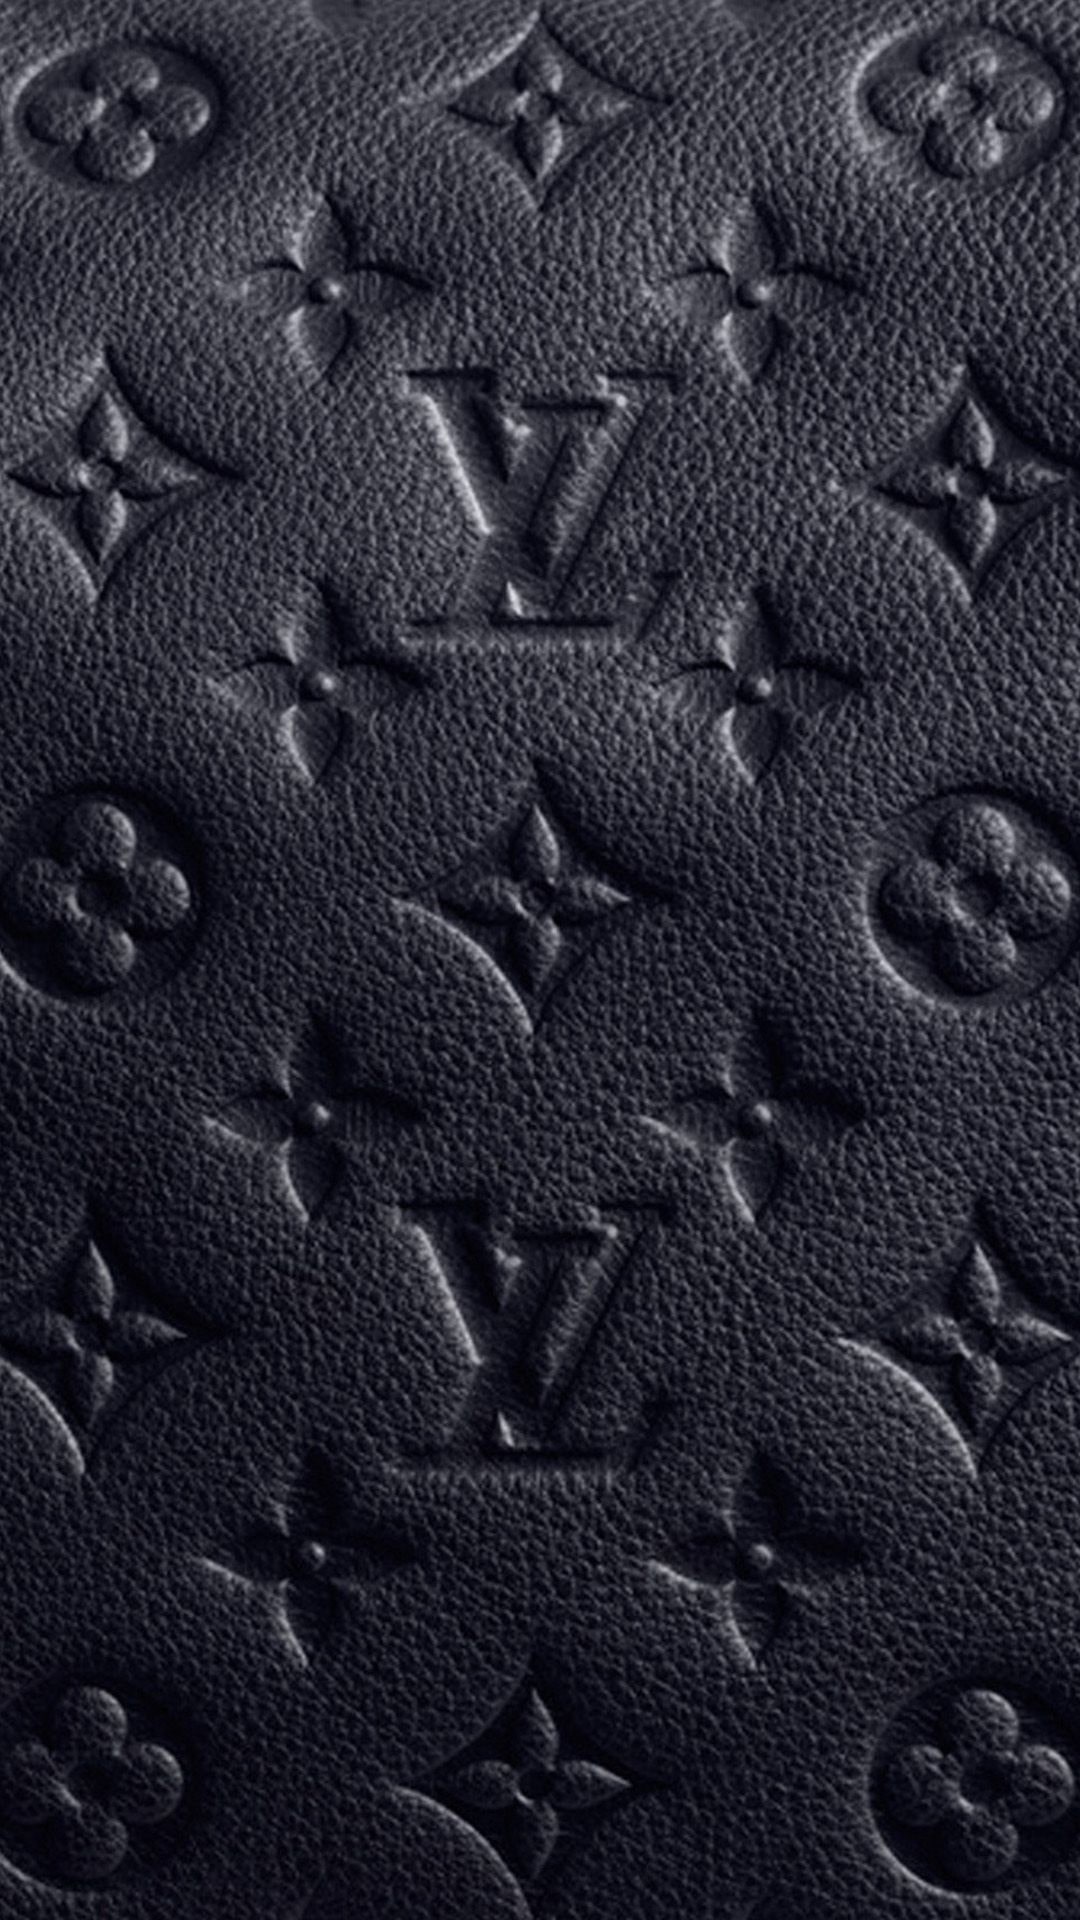 Vuitton Wallpaper -